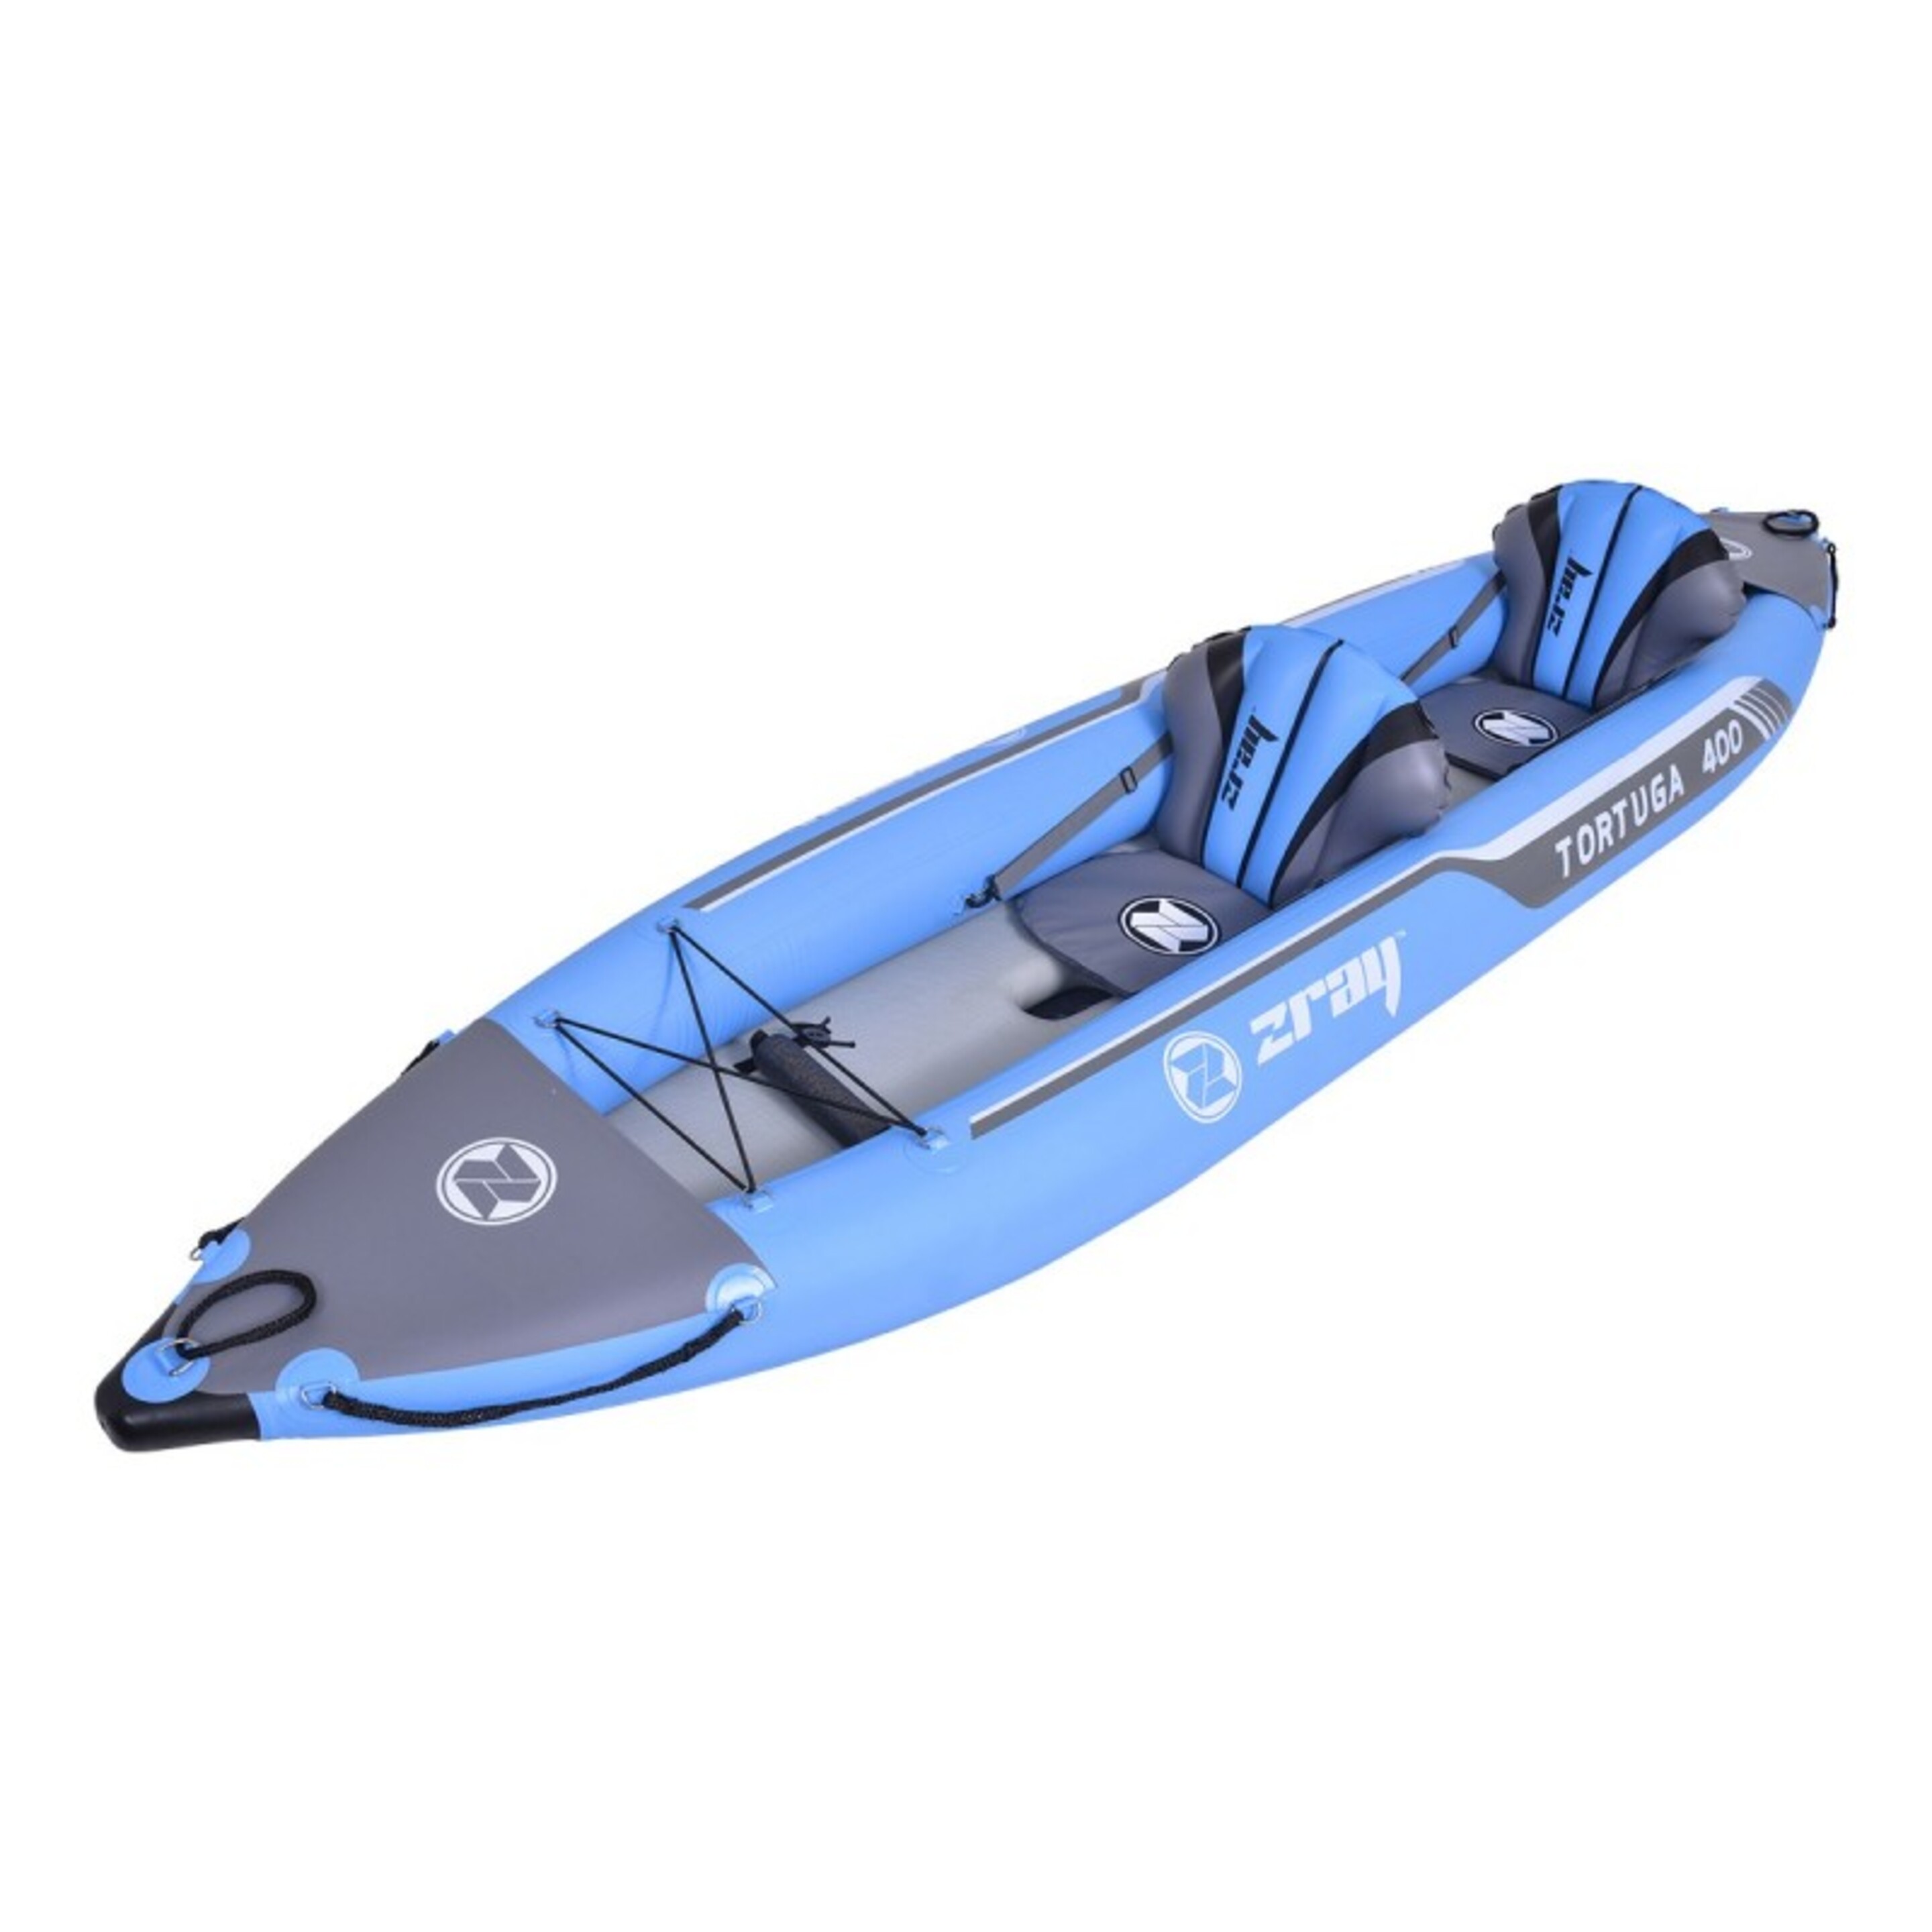 Kayak Hinchable Zray Tortuga 400 Nuevo Modelo 2021 - multicolor - 